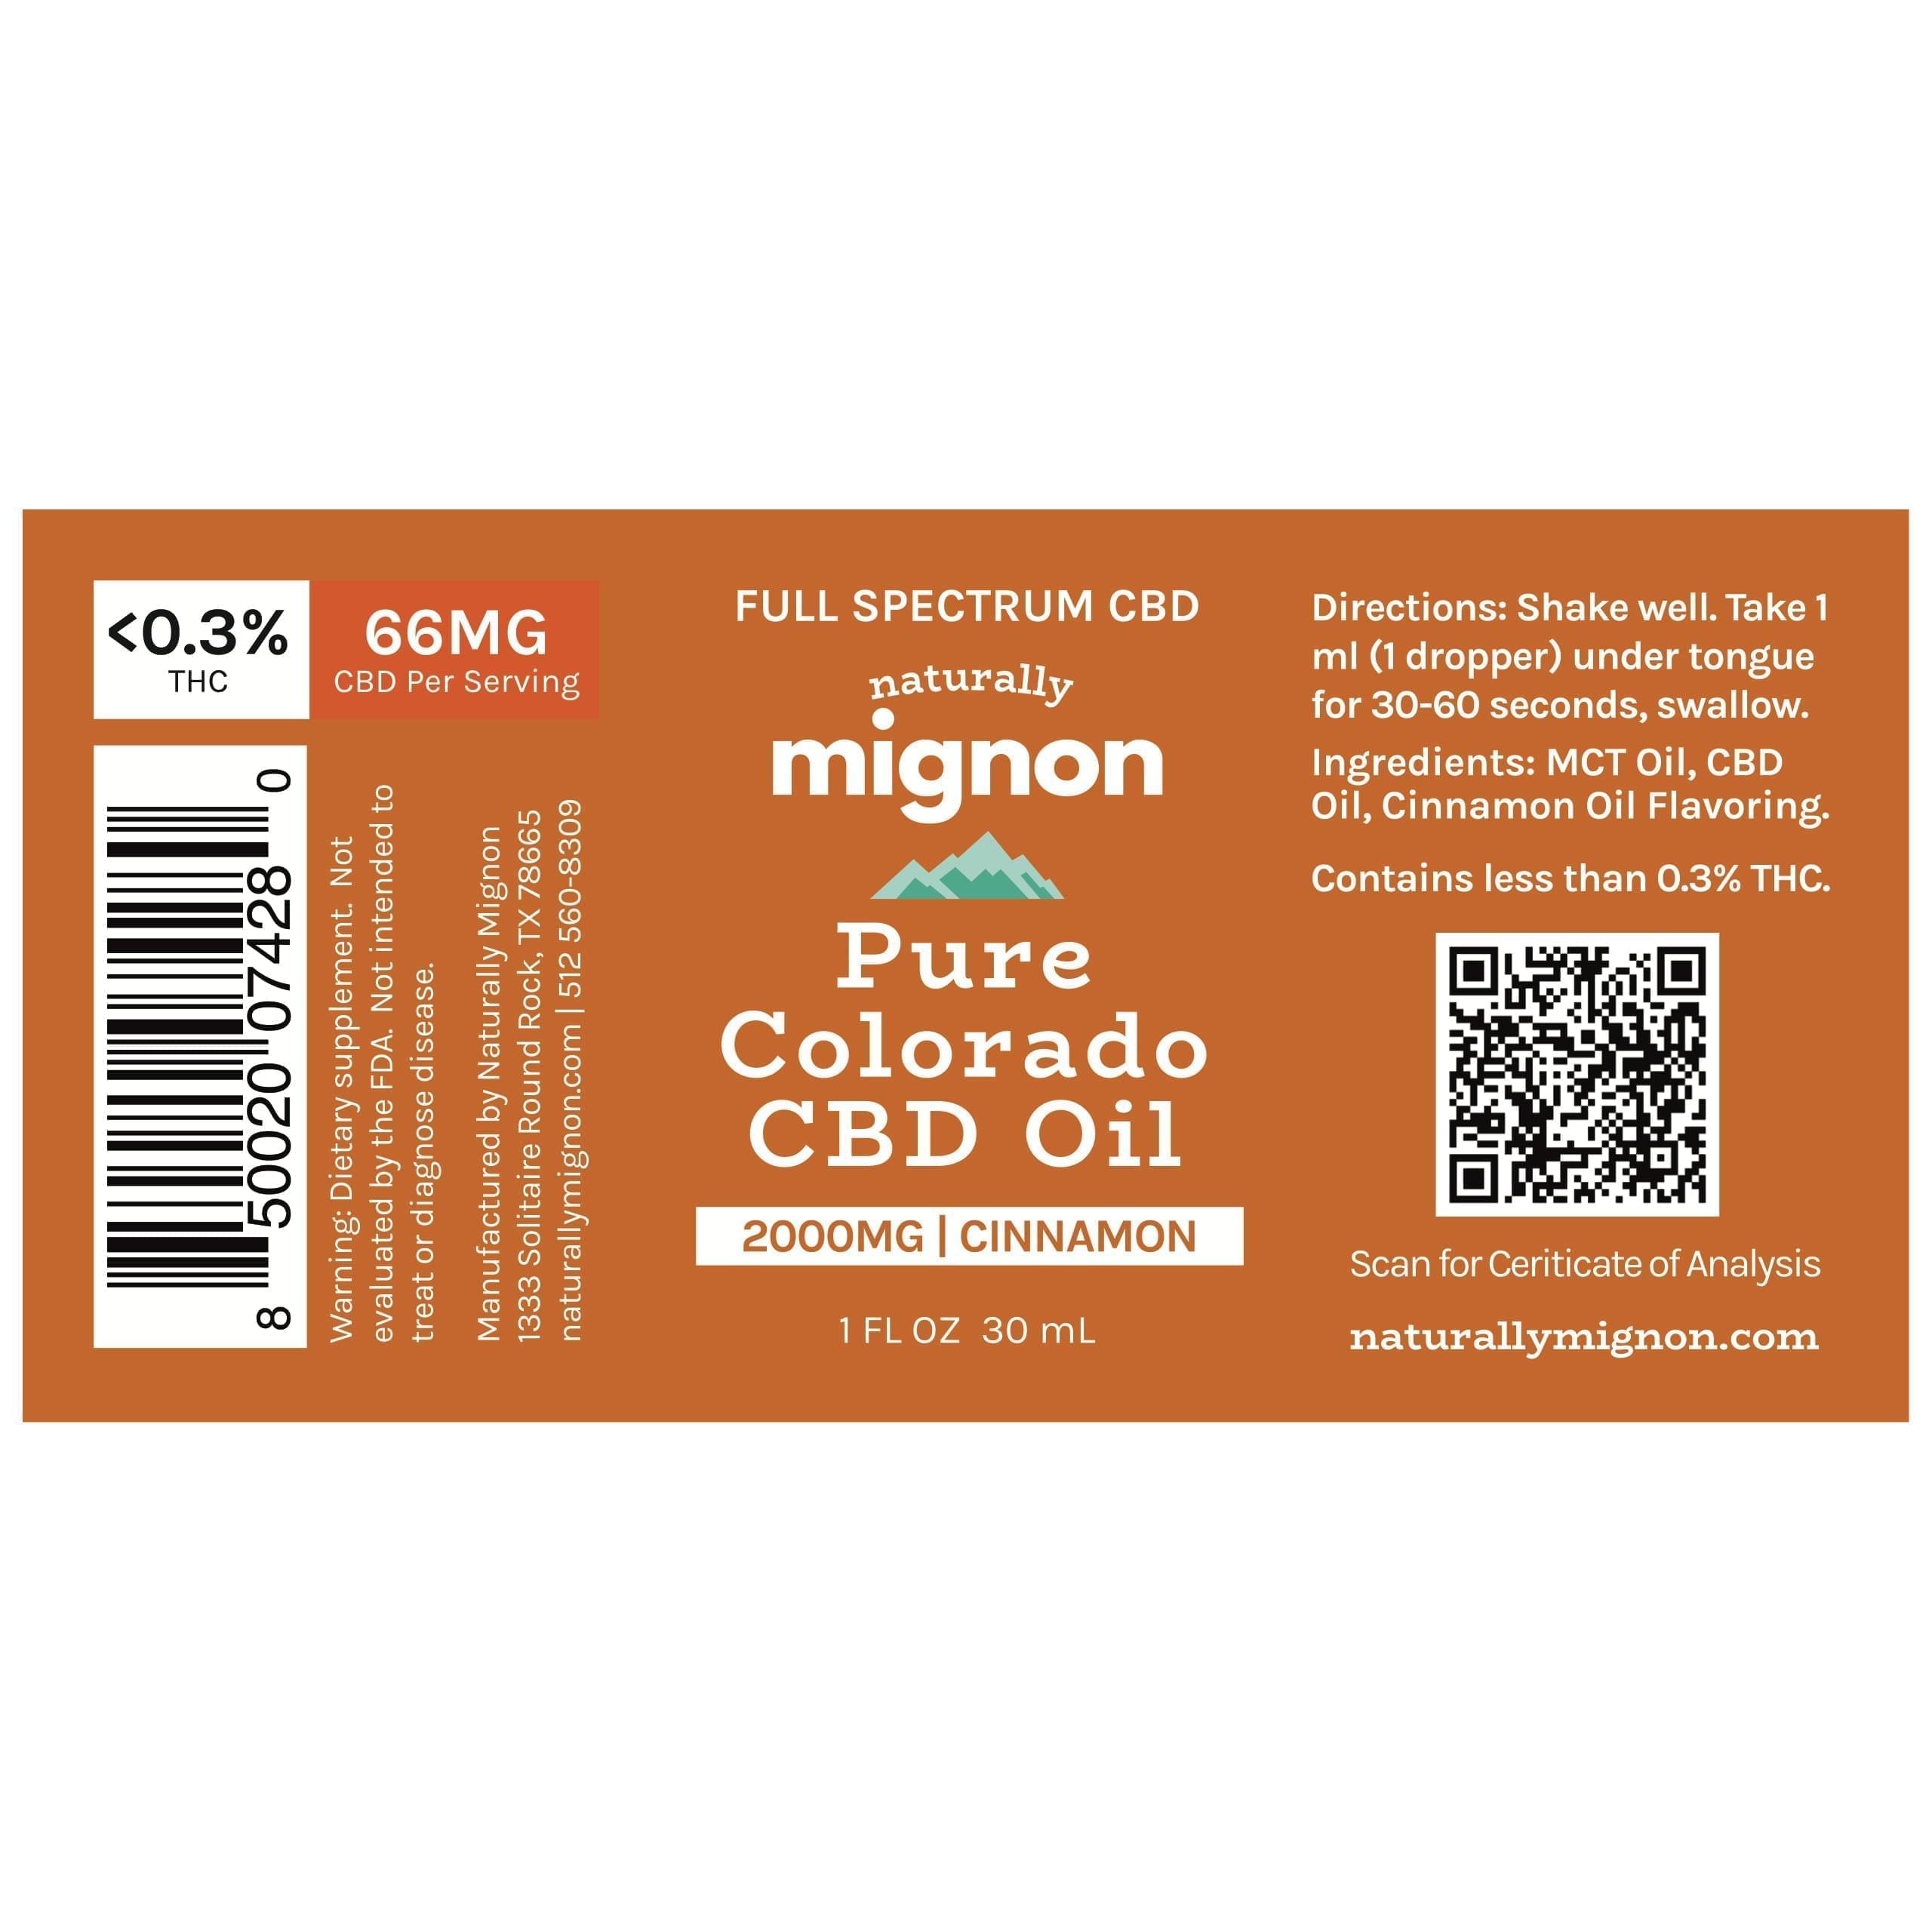 Pure Colorado Full Spectrum CBD Oil Label